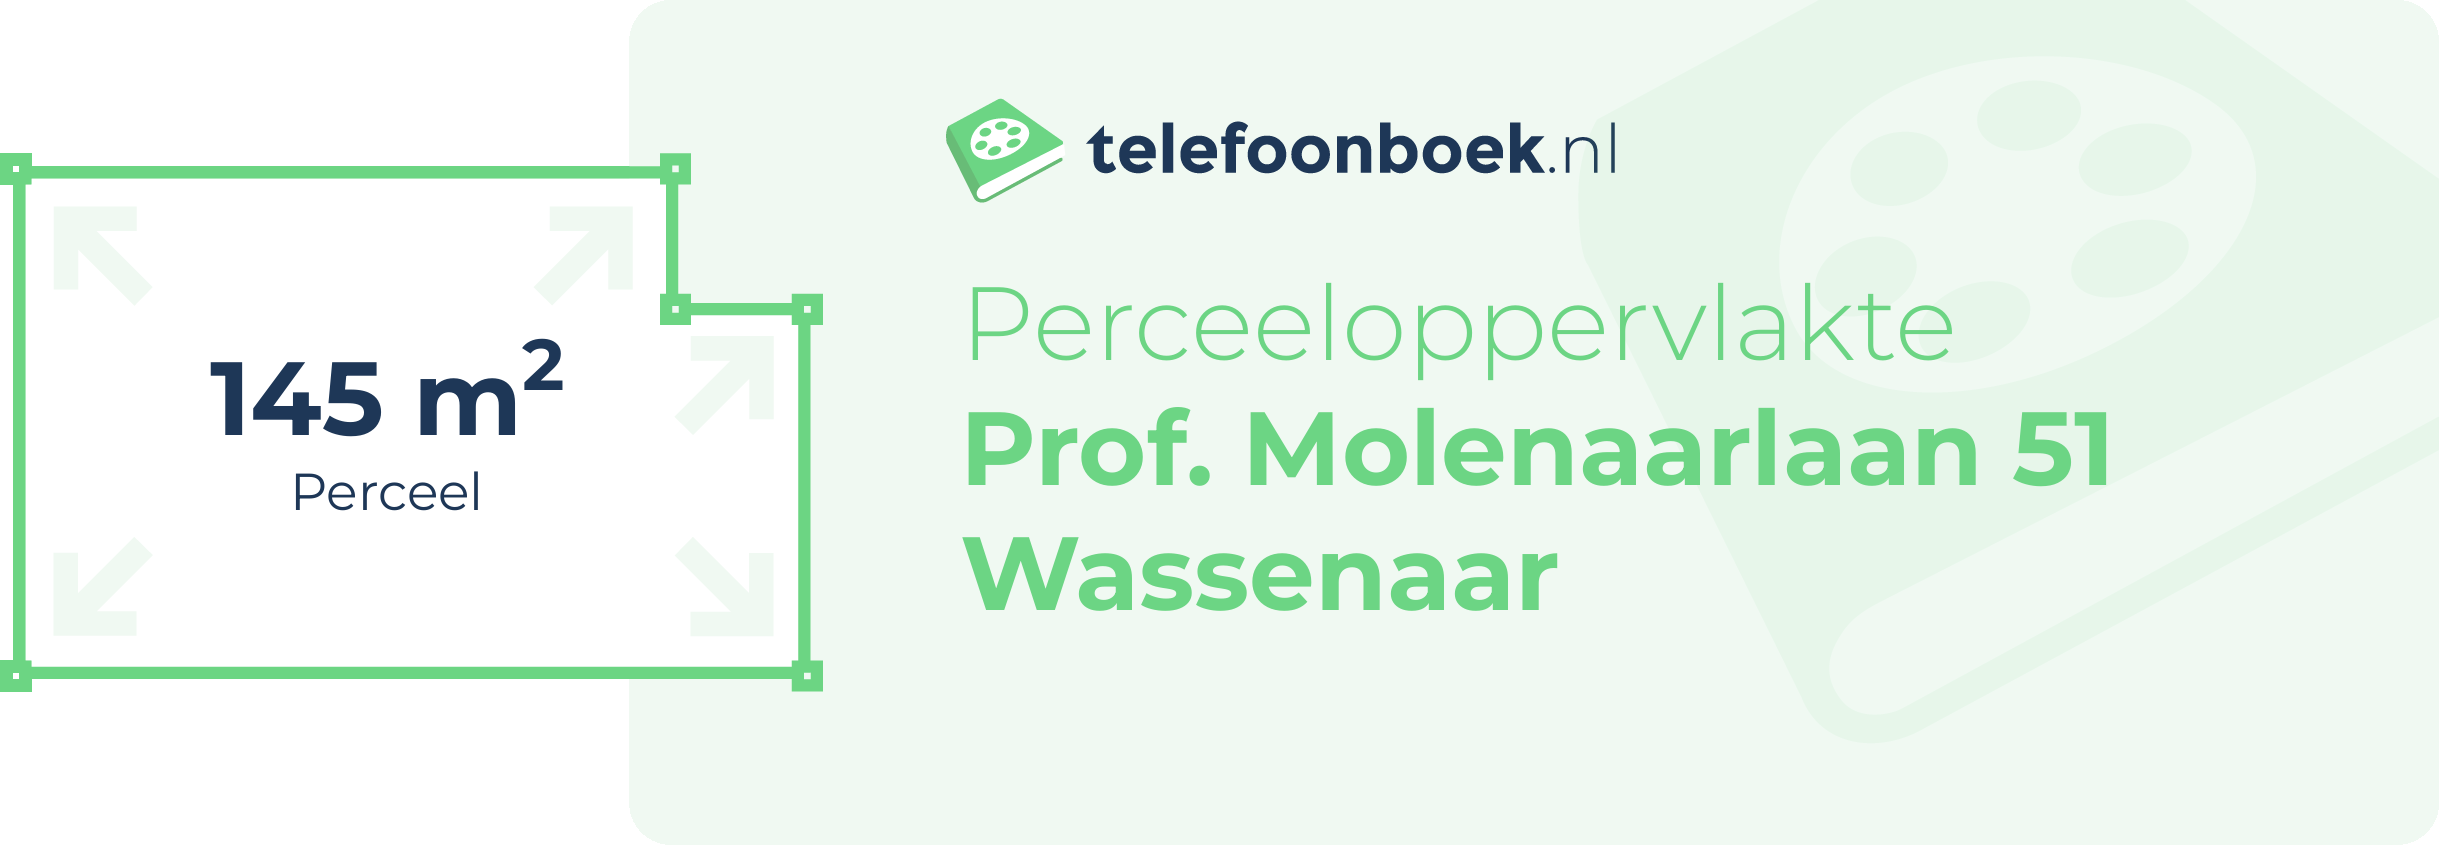 Perceeloppervlakte Prof. Molenaarlaan 51 Wassenaar